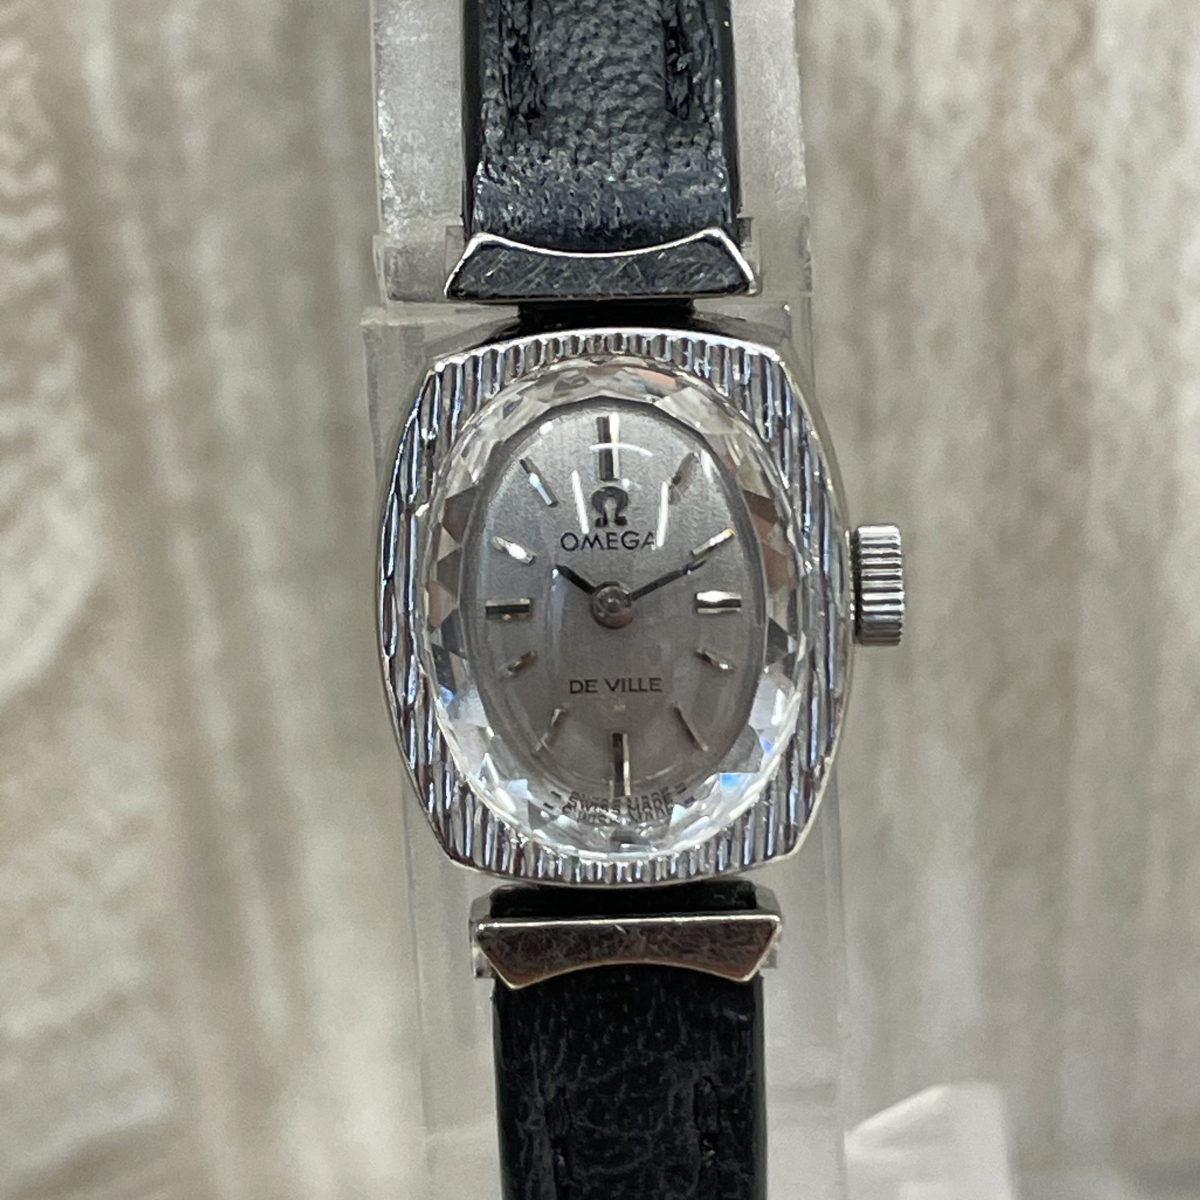 オメガのシルバー WGP 511.281 DevilWGP 手巻き時計 1970s製アンティークの買取実績です。